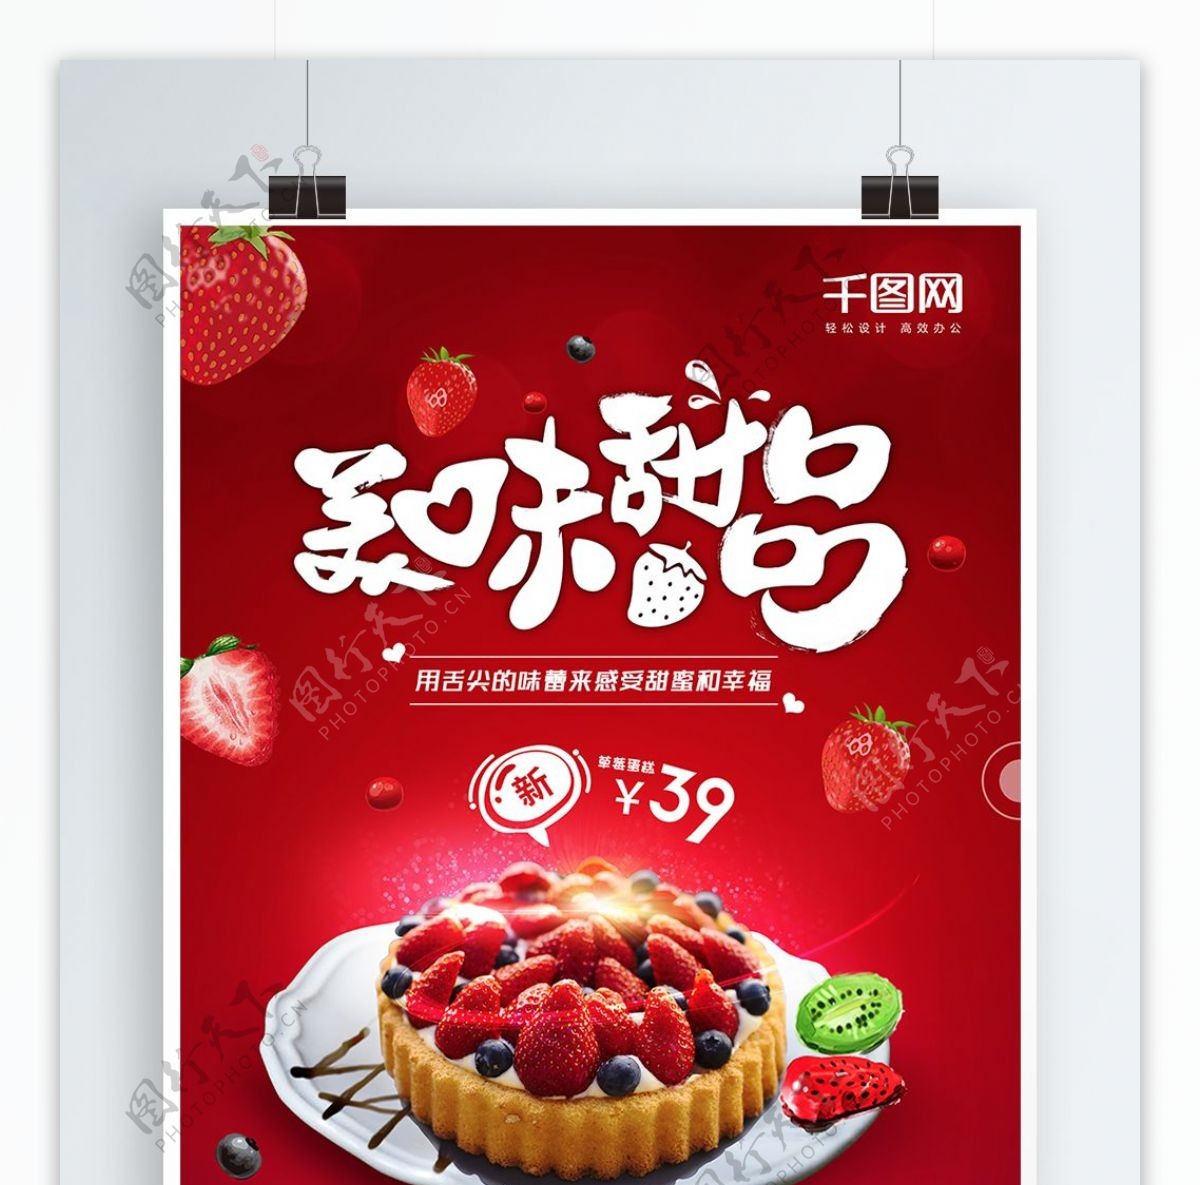 红色创意字体美味甜品草莓蛋糕美食海报